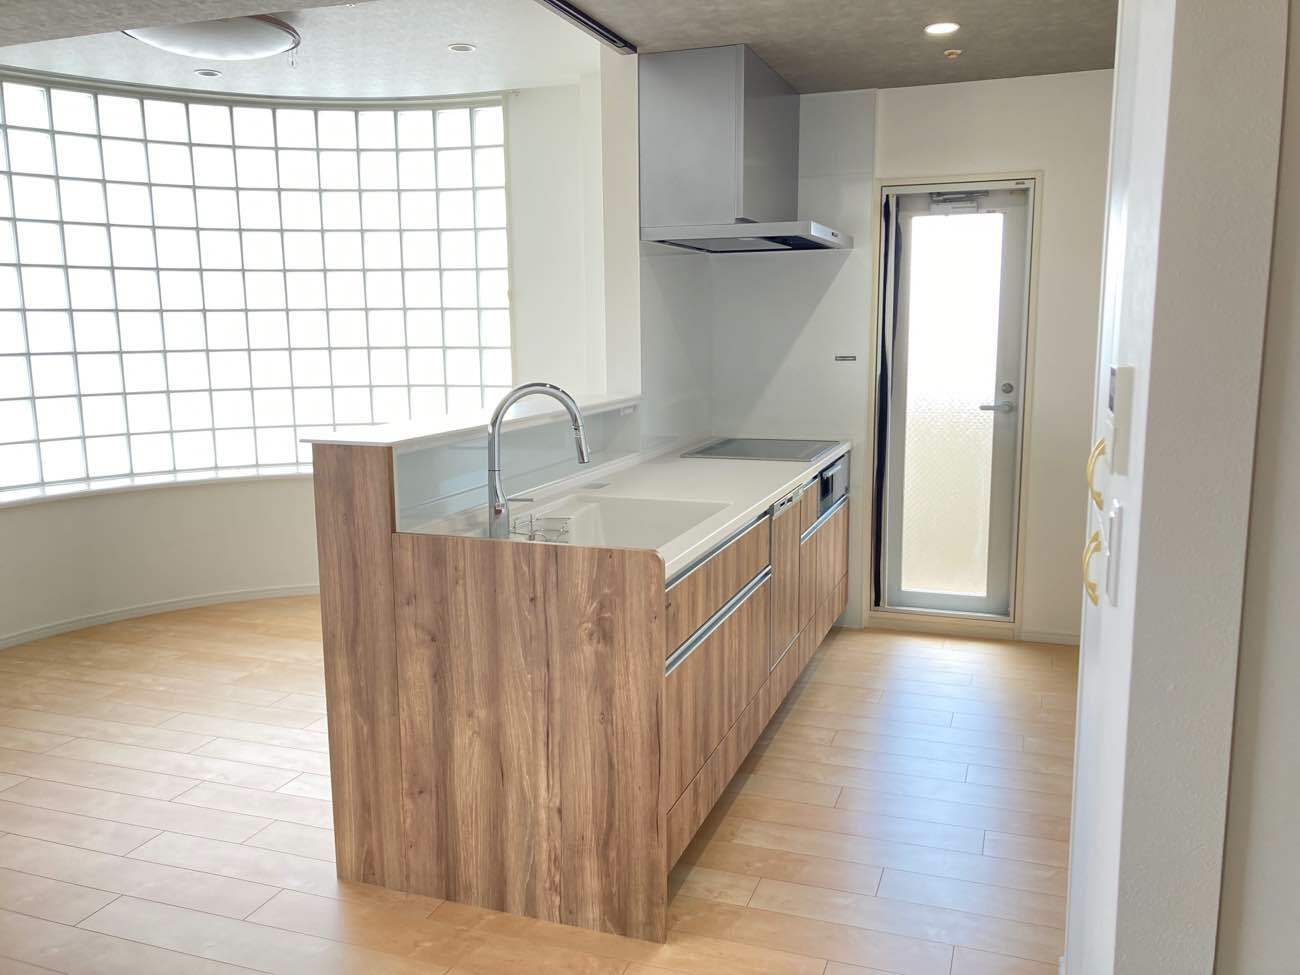 八尾市のマンションでキッチン取替、LDKの内装工事いたしました。